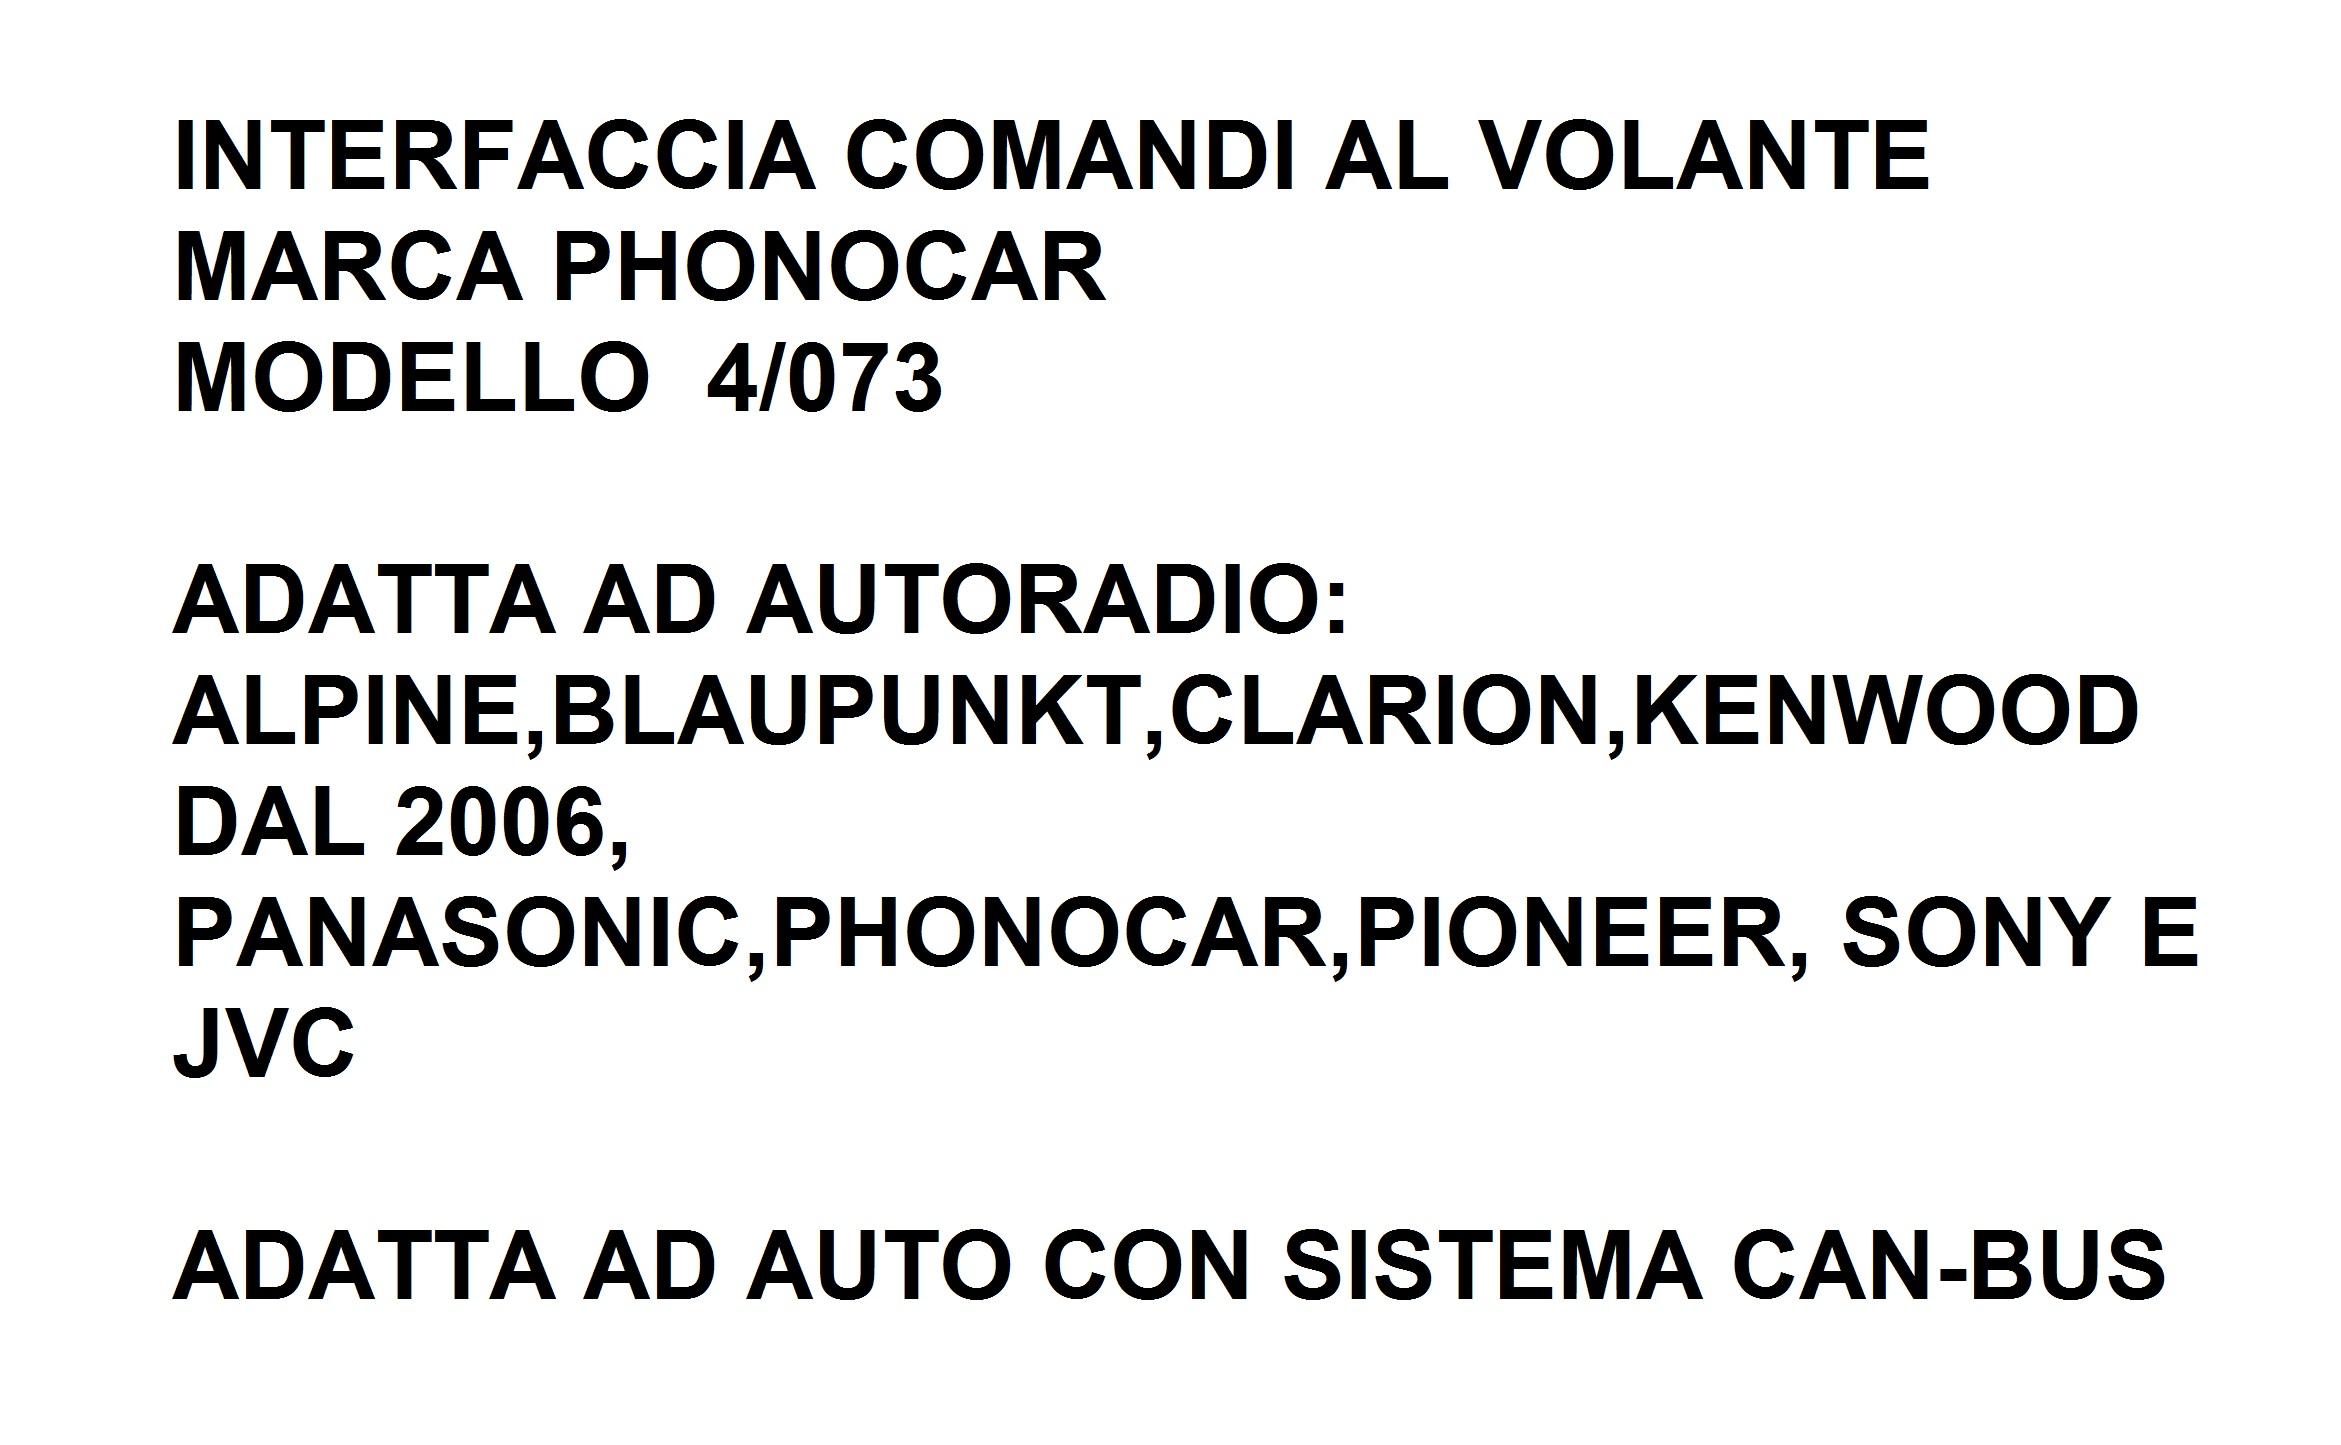 9550 - SEAT IBIZA DAL 2009 INTERFACCIA CAN-BUS&COMANDI AL VOLANTE 4/073PHONOCAR